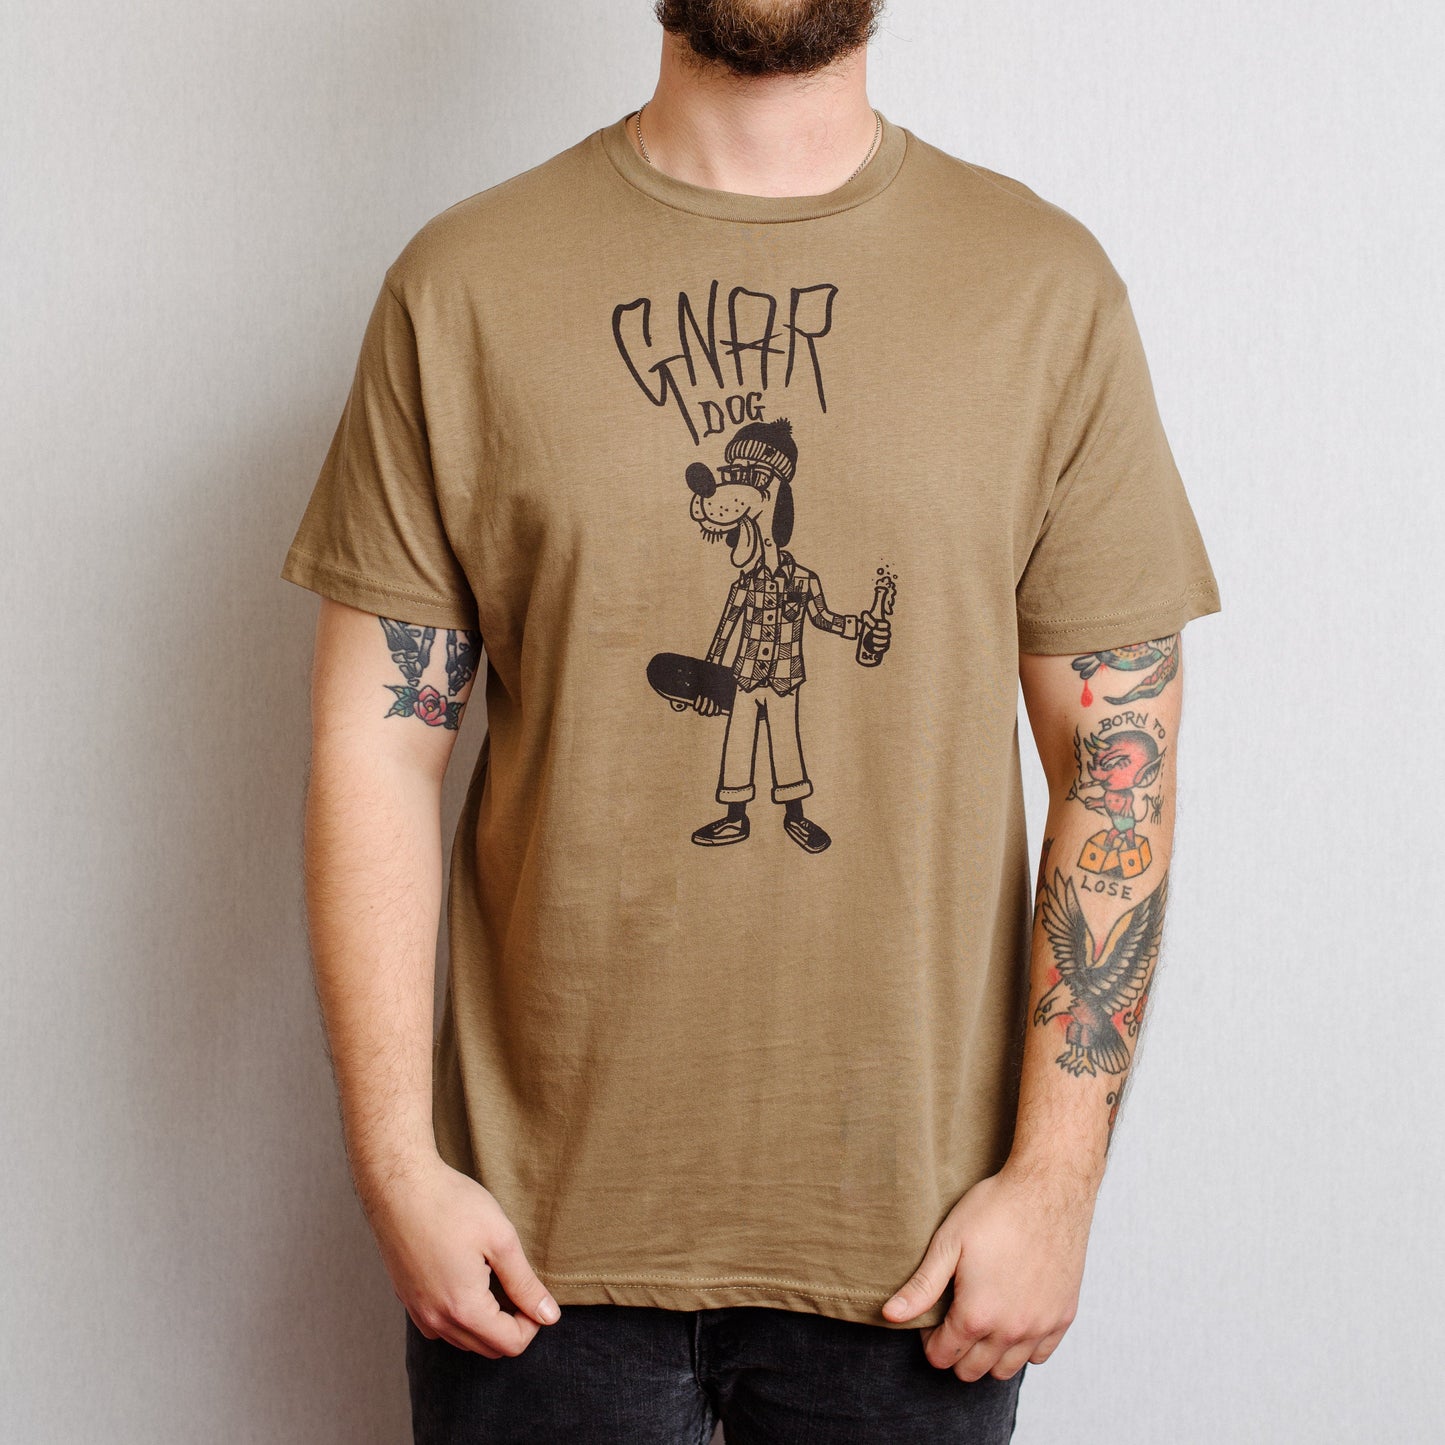 Gnar Dog T-Shirt.